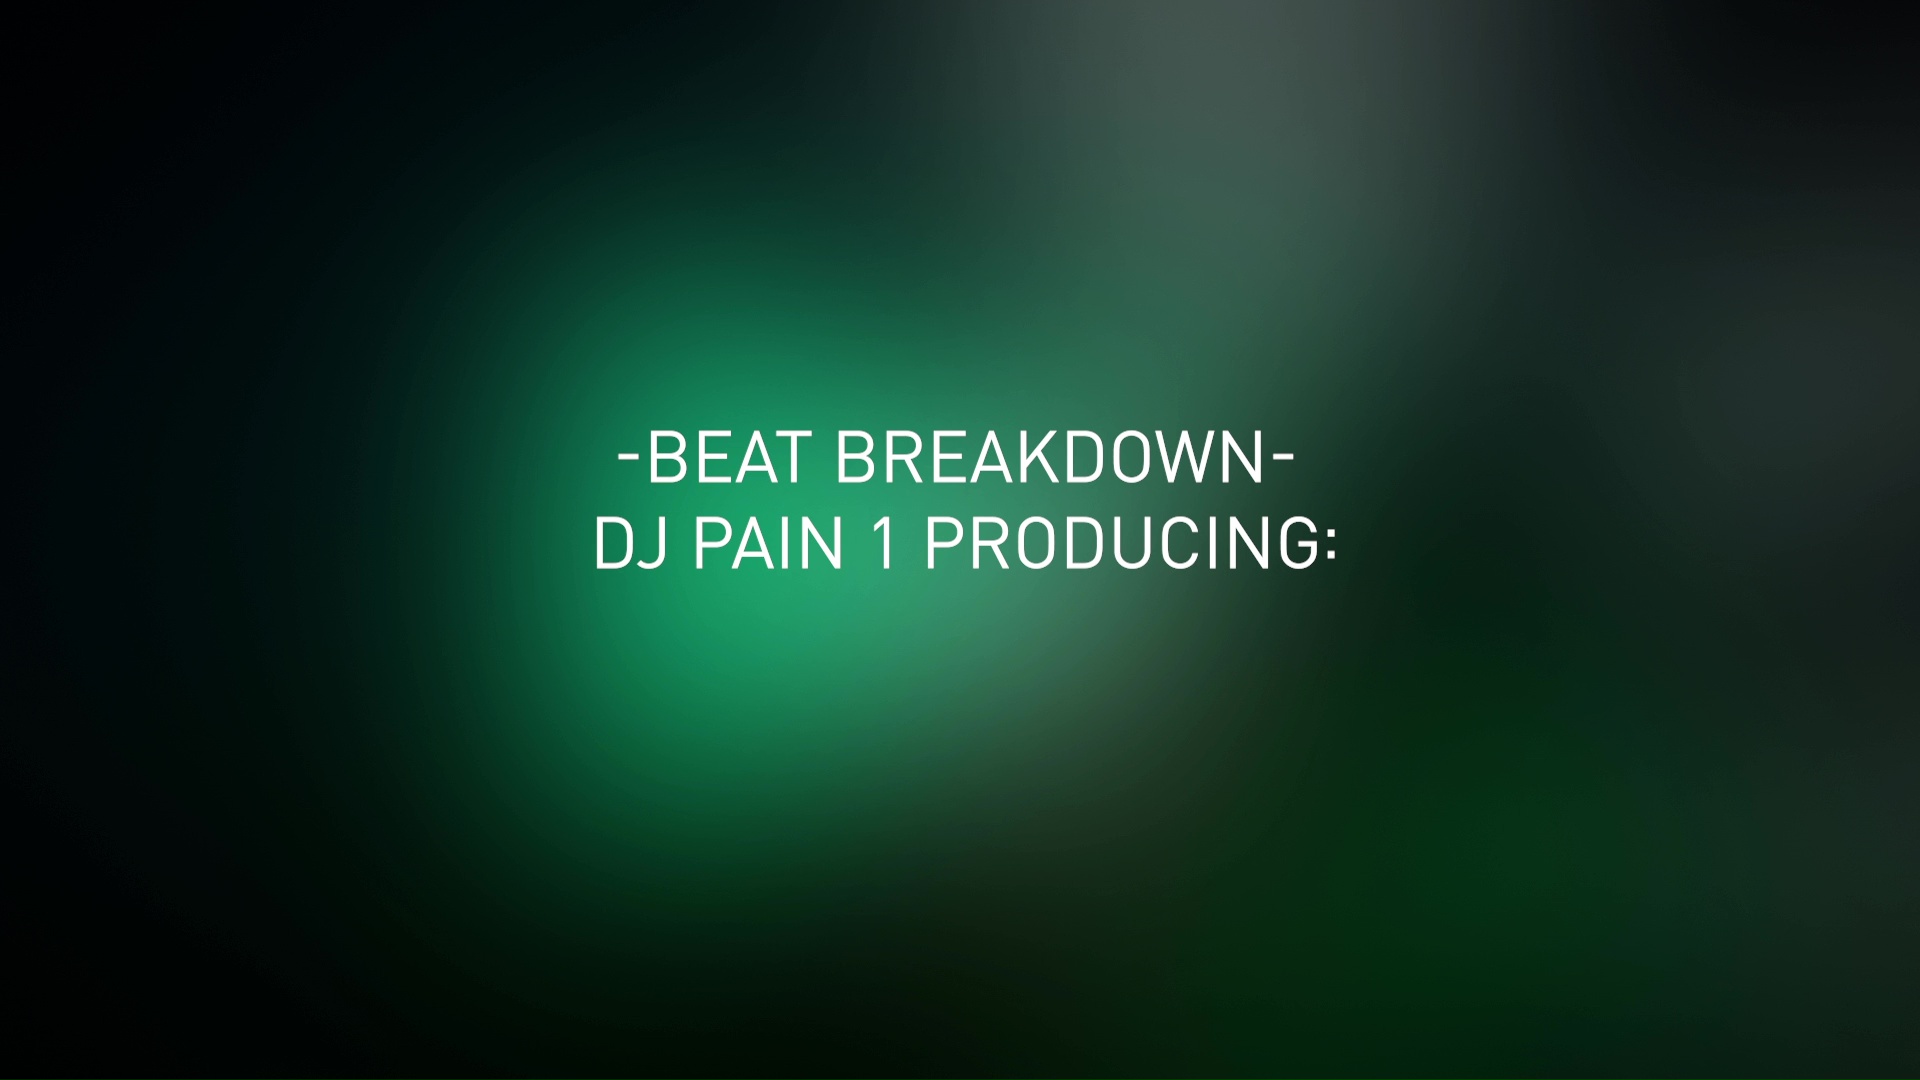 DJ Pain 1 - Beat Breakdown